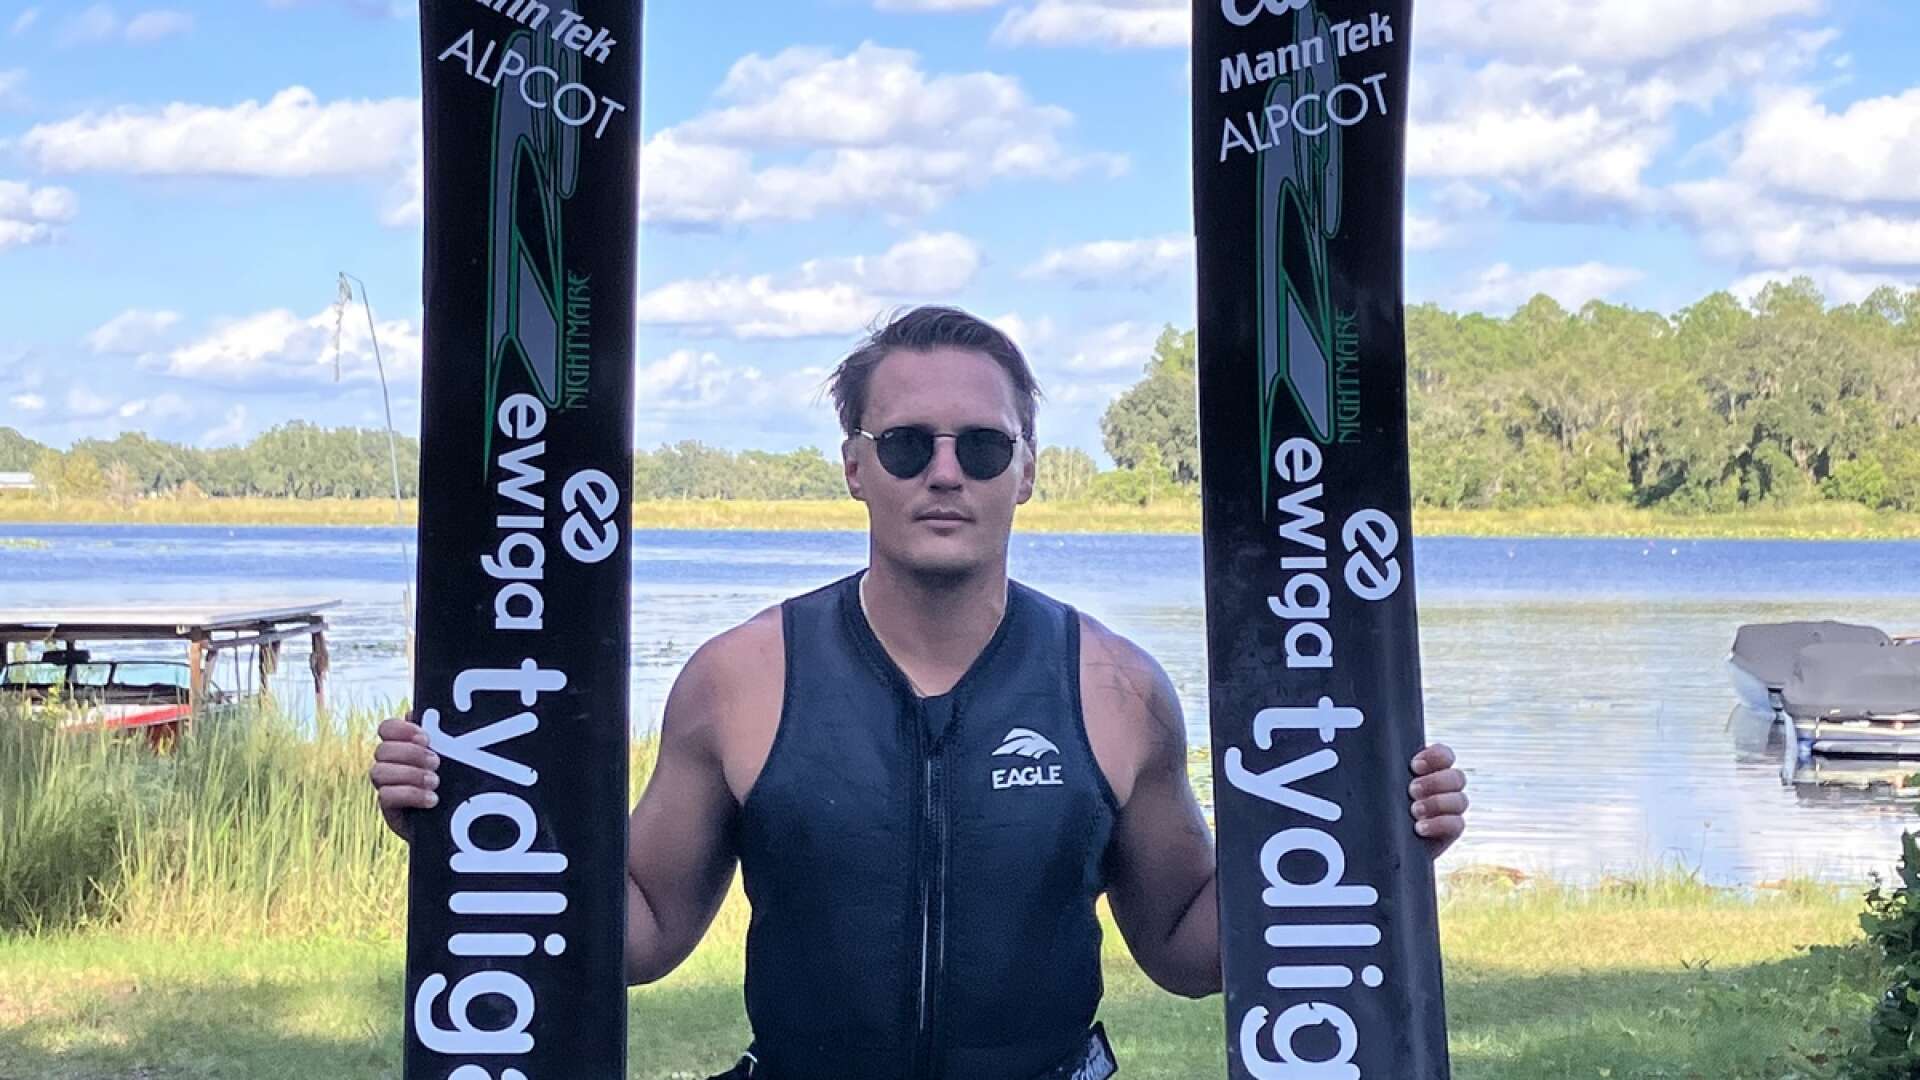 Mariestadssonen Patrik Öhman på VM i vattenskidor i Florida. Han satsade fullt, men hade inte centimeterna i rampträffen på sin sida.